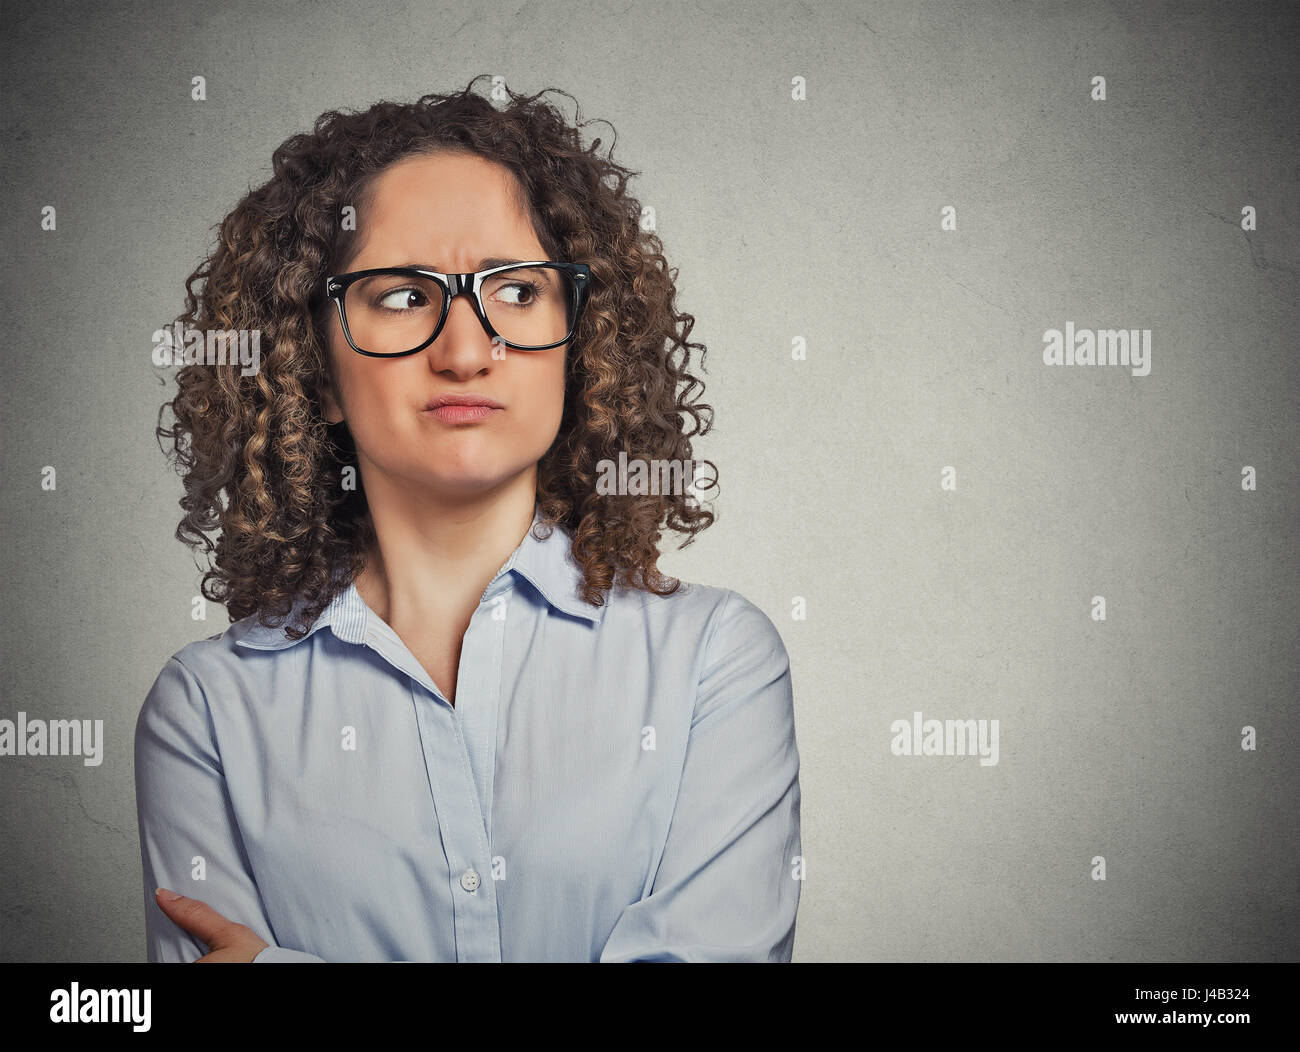 Missfallen verdächtige junge Frau mit Brille seitwärts auf grauen Hintergrund isoliert. Negative Gesichtsausdruck Emotionen Wahrnehmung Stockfoto